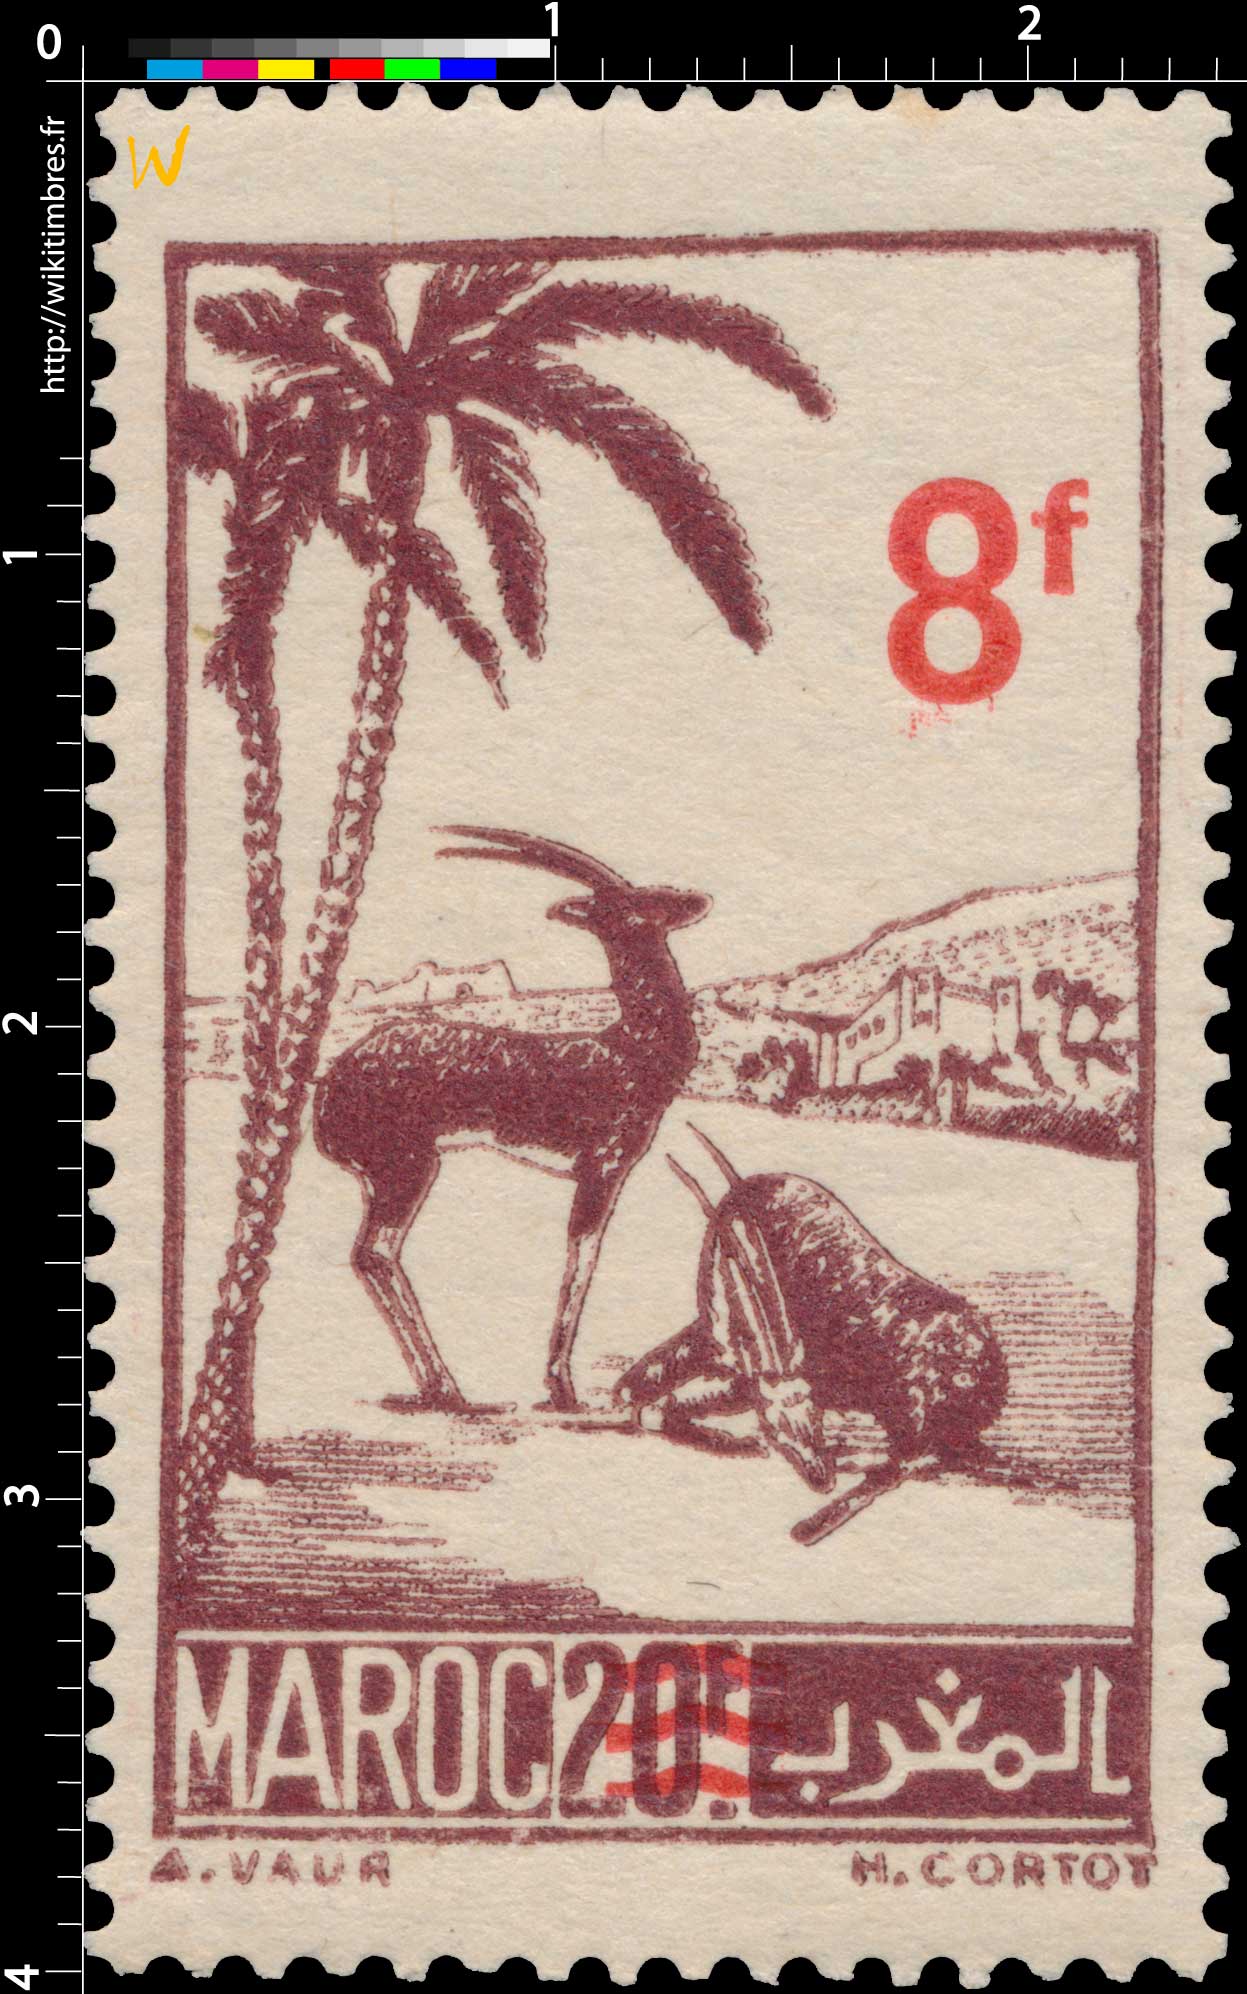 1948 Maroc - Gazelles